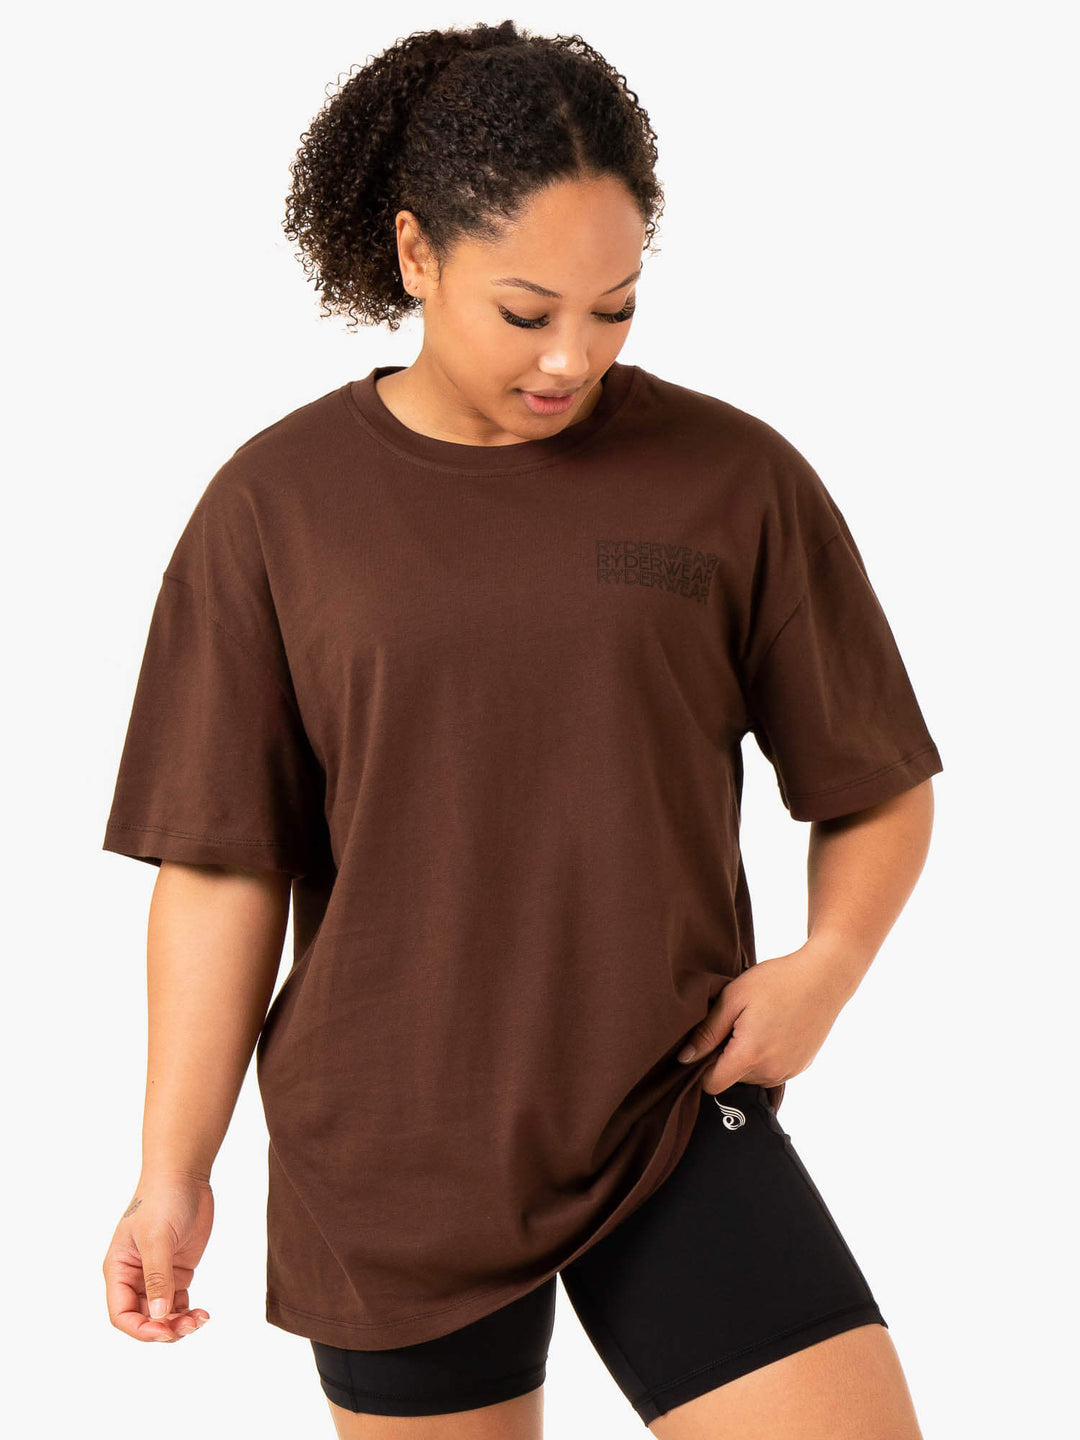 Level Up Oversized T-Shirt - Chocolate Clothing Ryderwear 